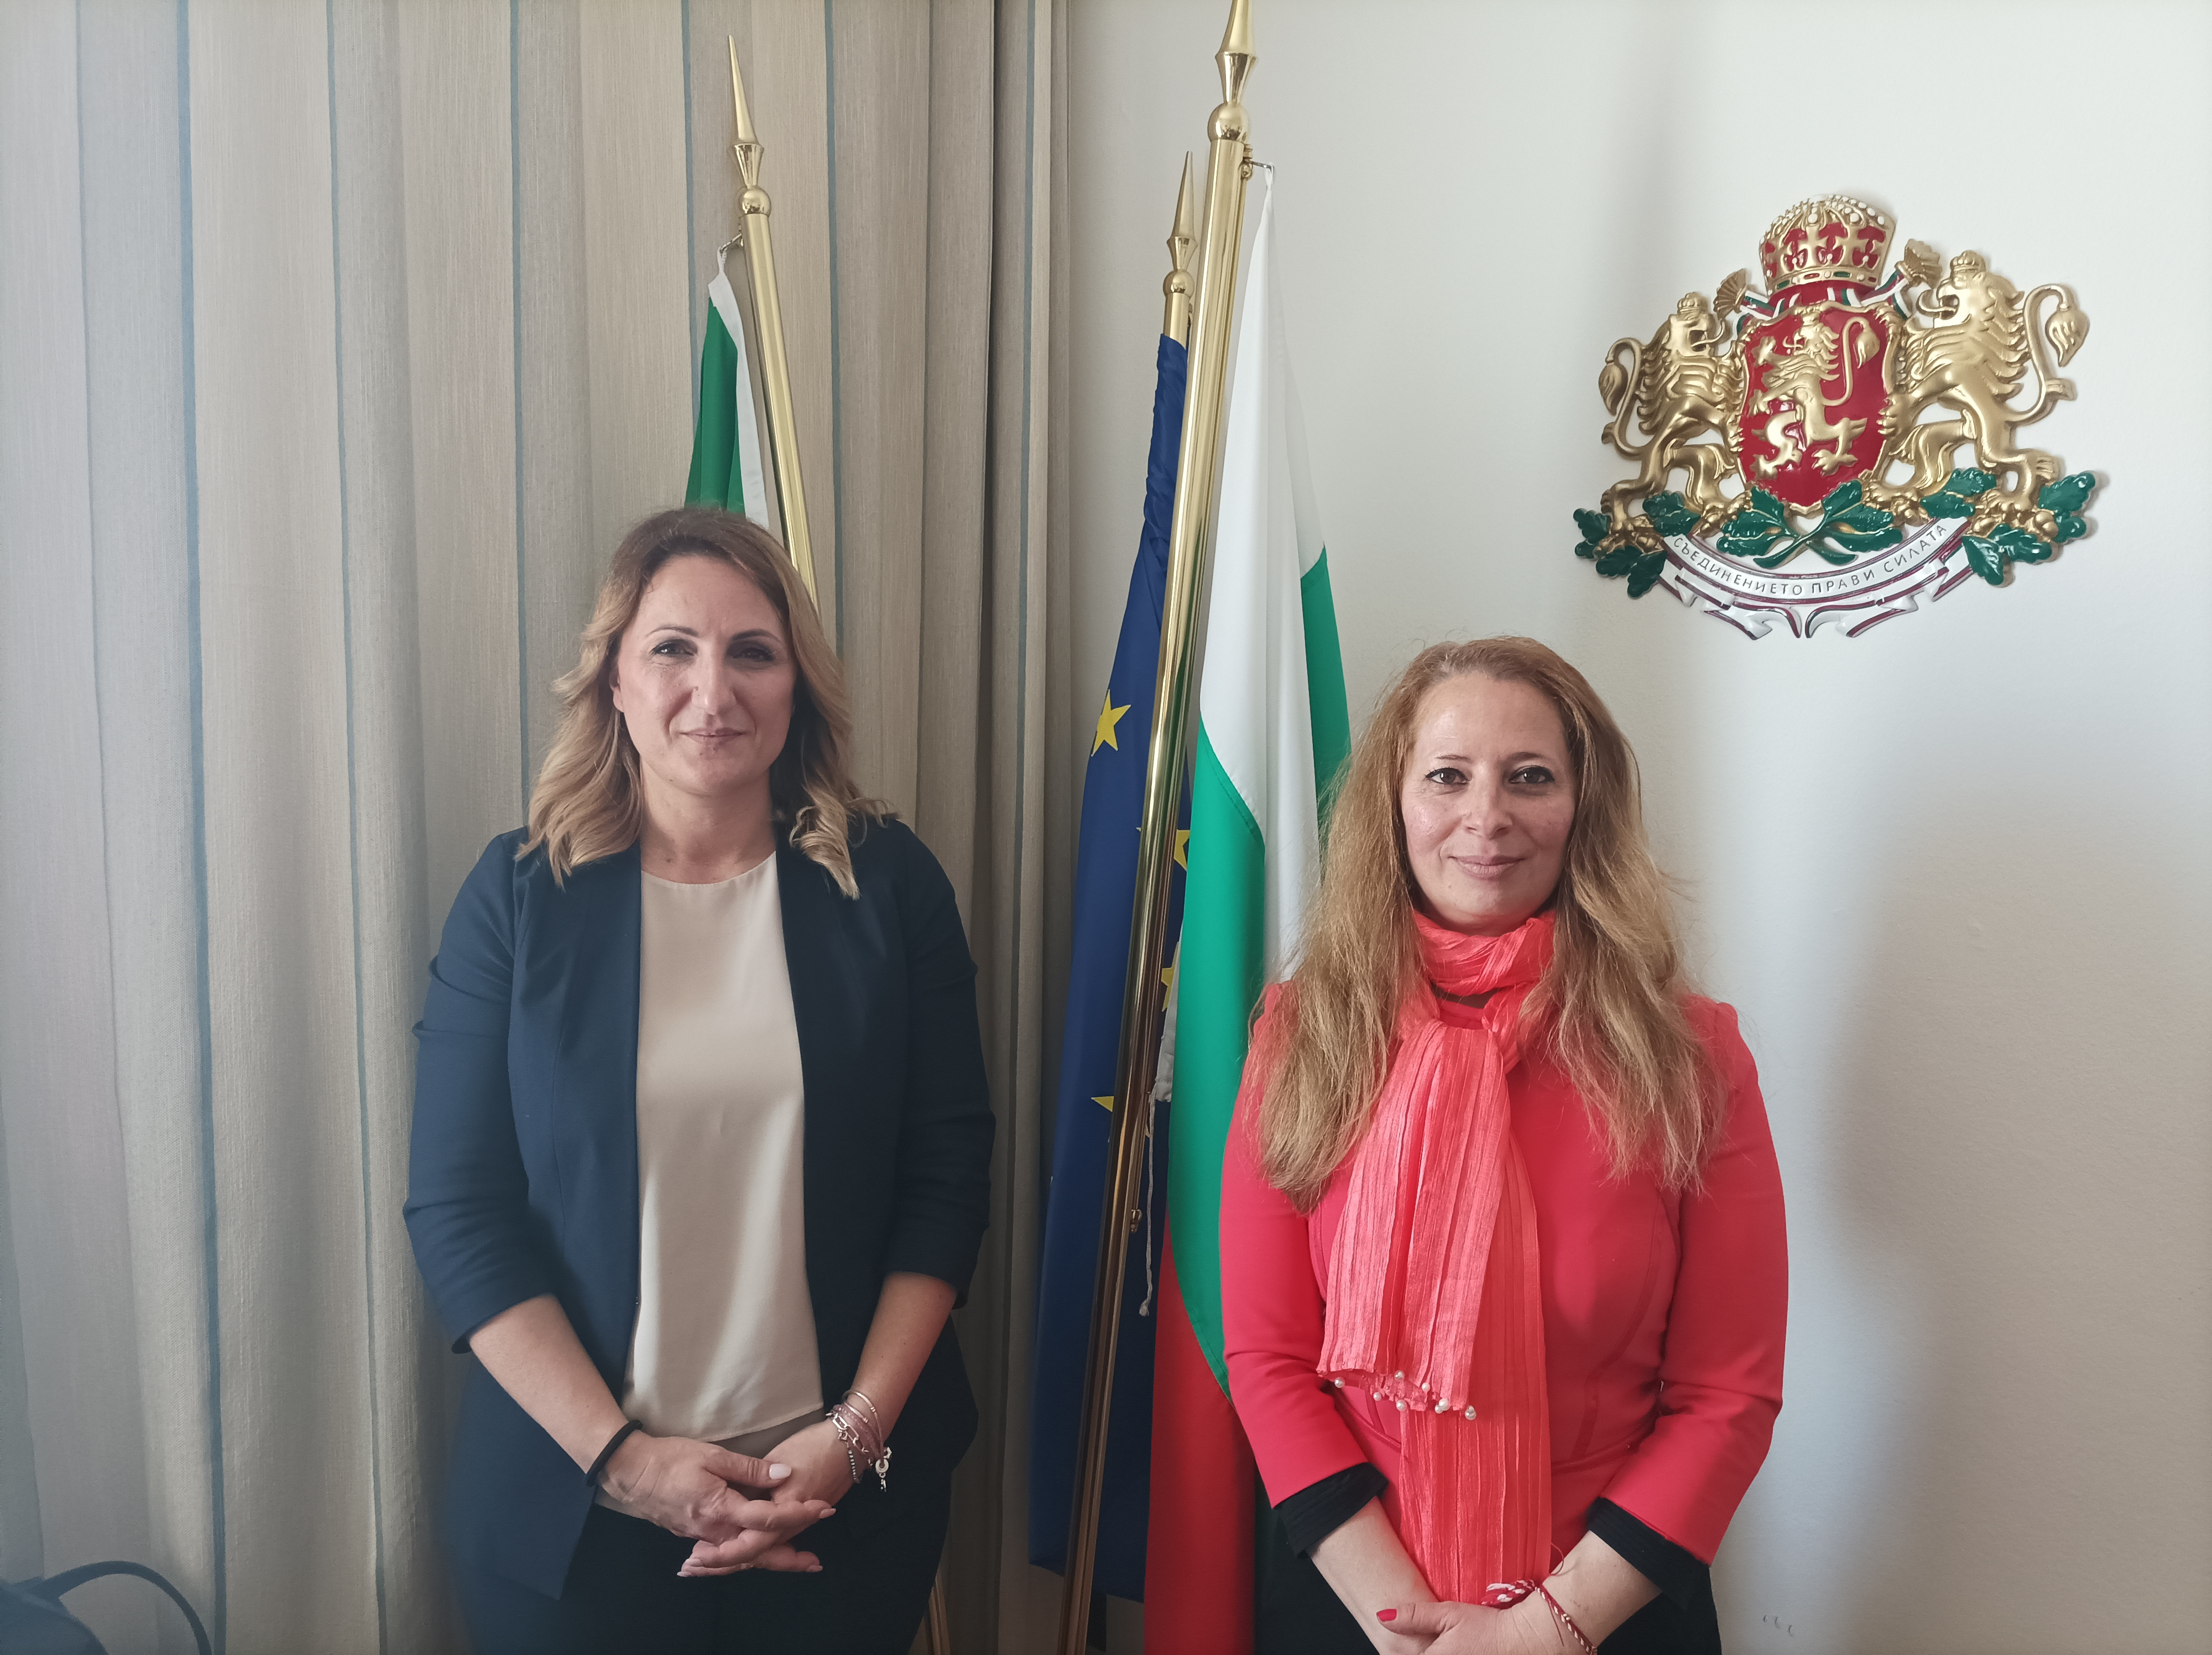  Генералният консул Ана Пакалева се срещна с кмета на община Бодио Ломнаго в провинция Варезе